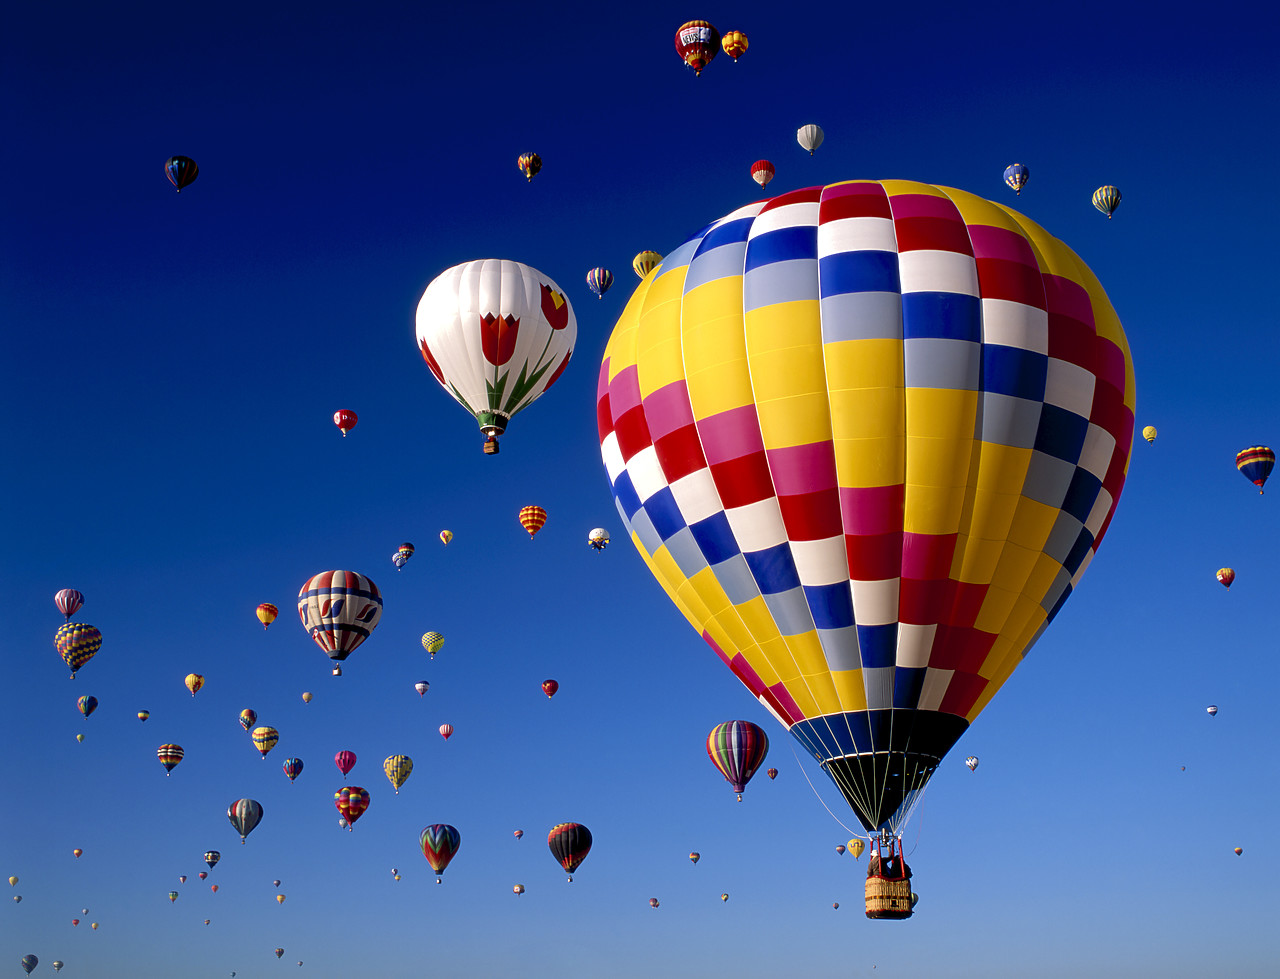 #990591-1 - Hot Air Balloons, Albuquerque, New Mexico, USA